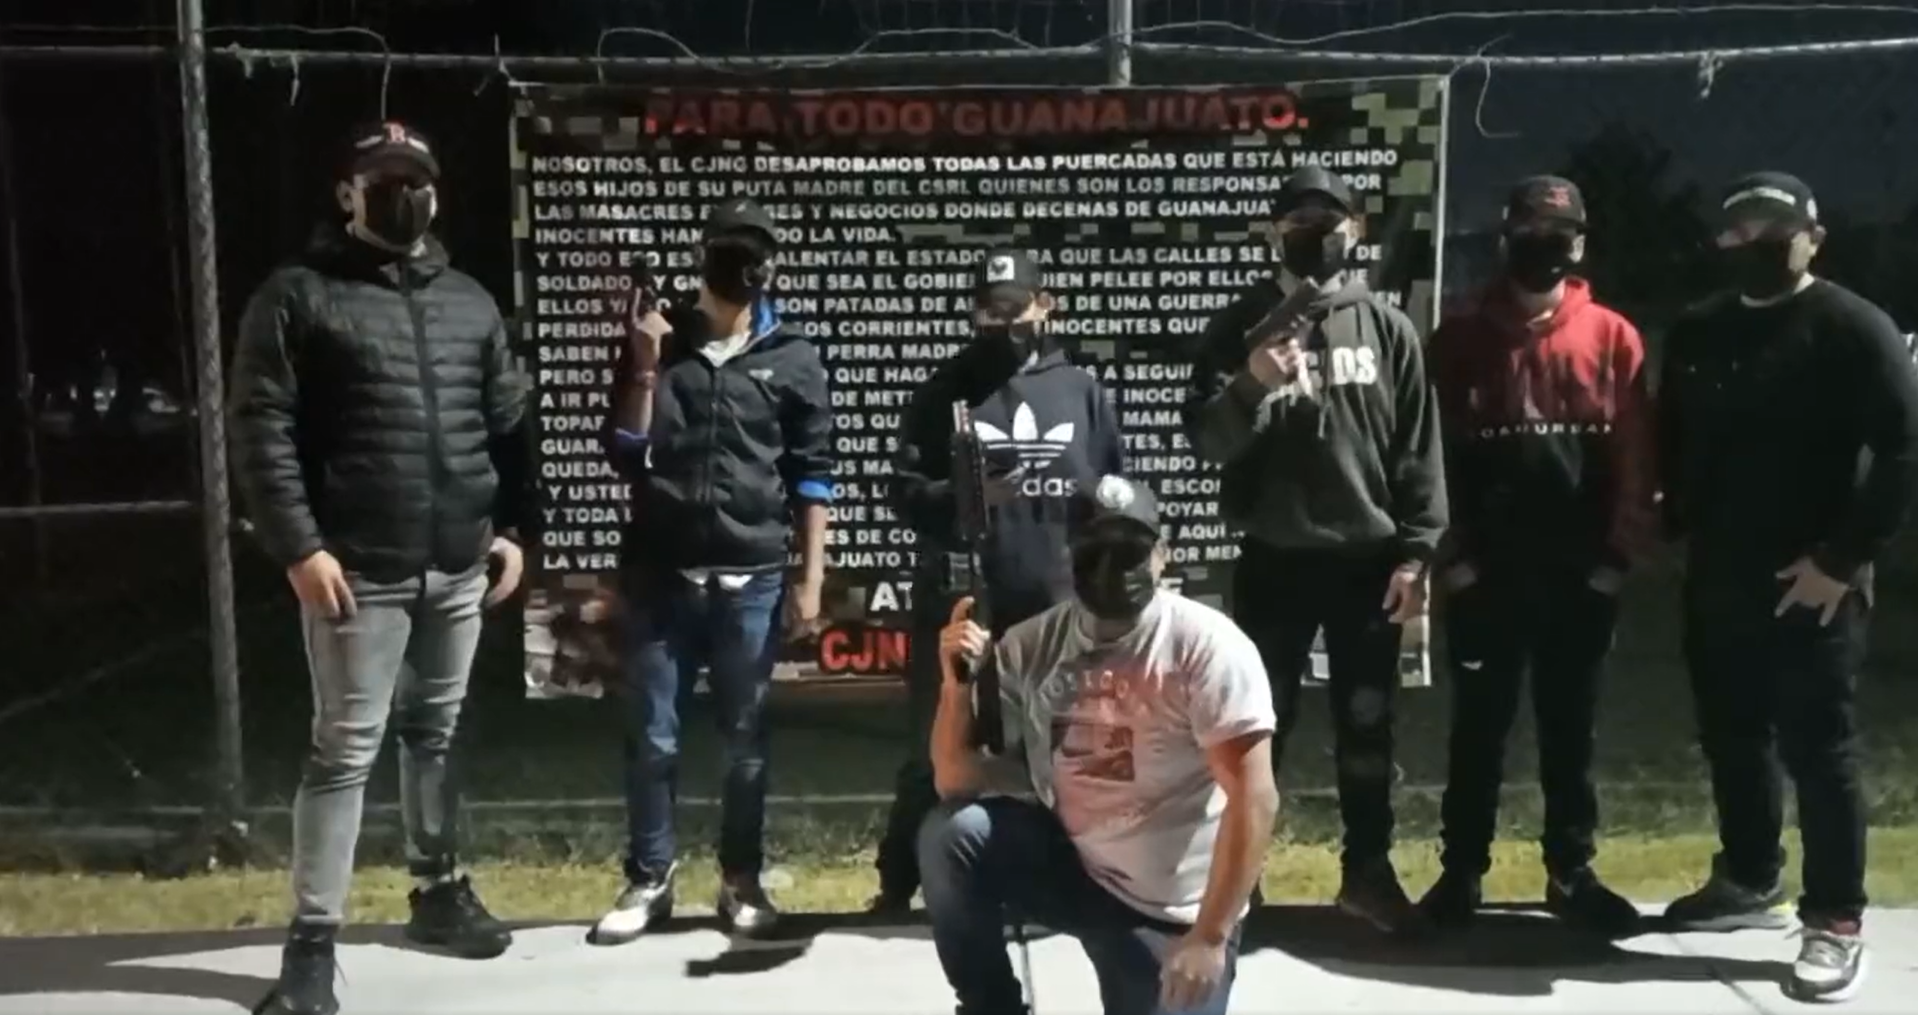 En oto video aparecieron siete hombres vestido de civil, con un mensaje similar 
(Foto: Twitter/@Elblogdelosgua1)